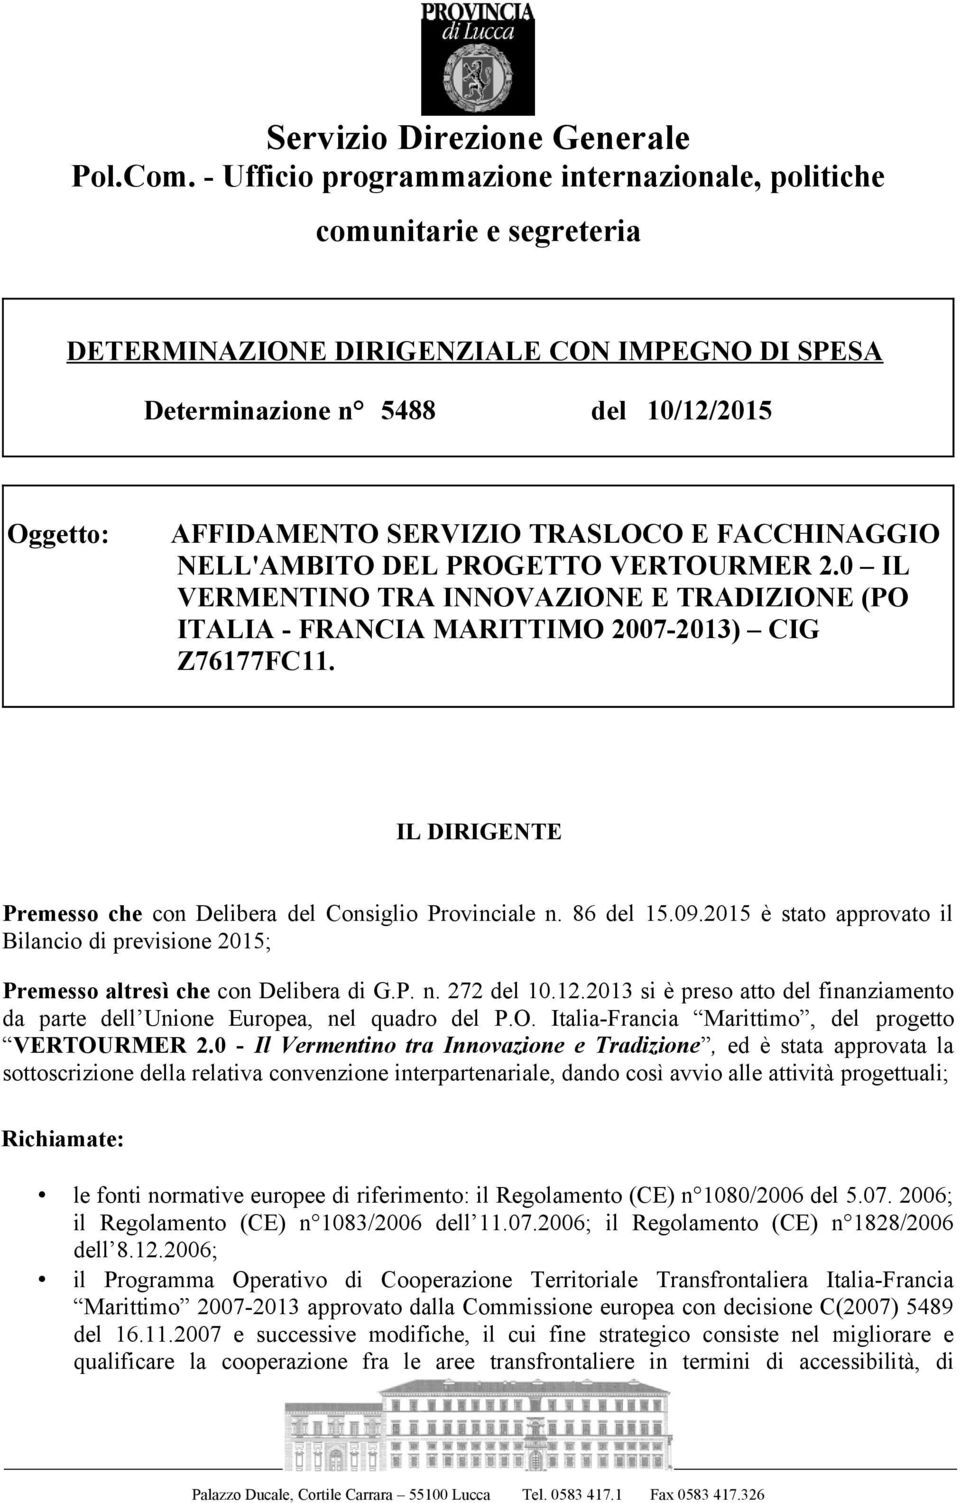 TRASLOCO E FACCHINAGGIO NELL'AMBITO DEL PROGETTO VERTOURMER 2.0 IL VERMENTINO TRA INNOVAZIONE E TRADIZIONE (PO ITALIA - FRANCIA MARITTIMO 2007-2013) CIG Z76177FC11.